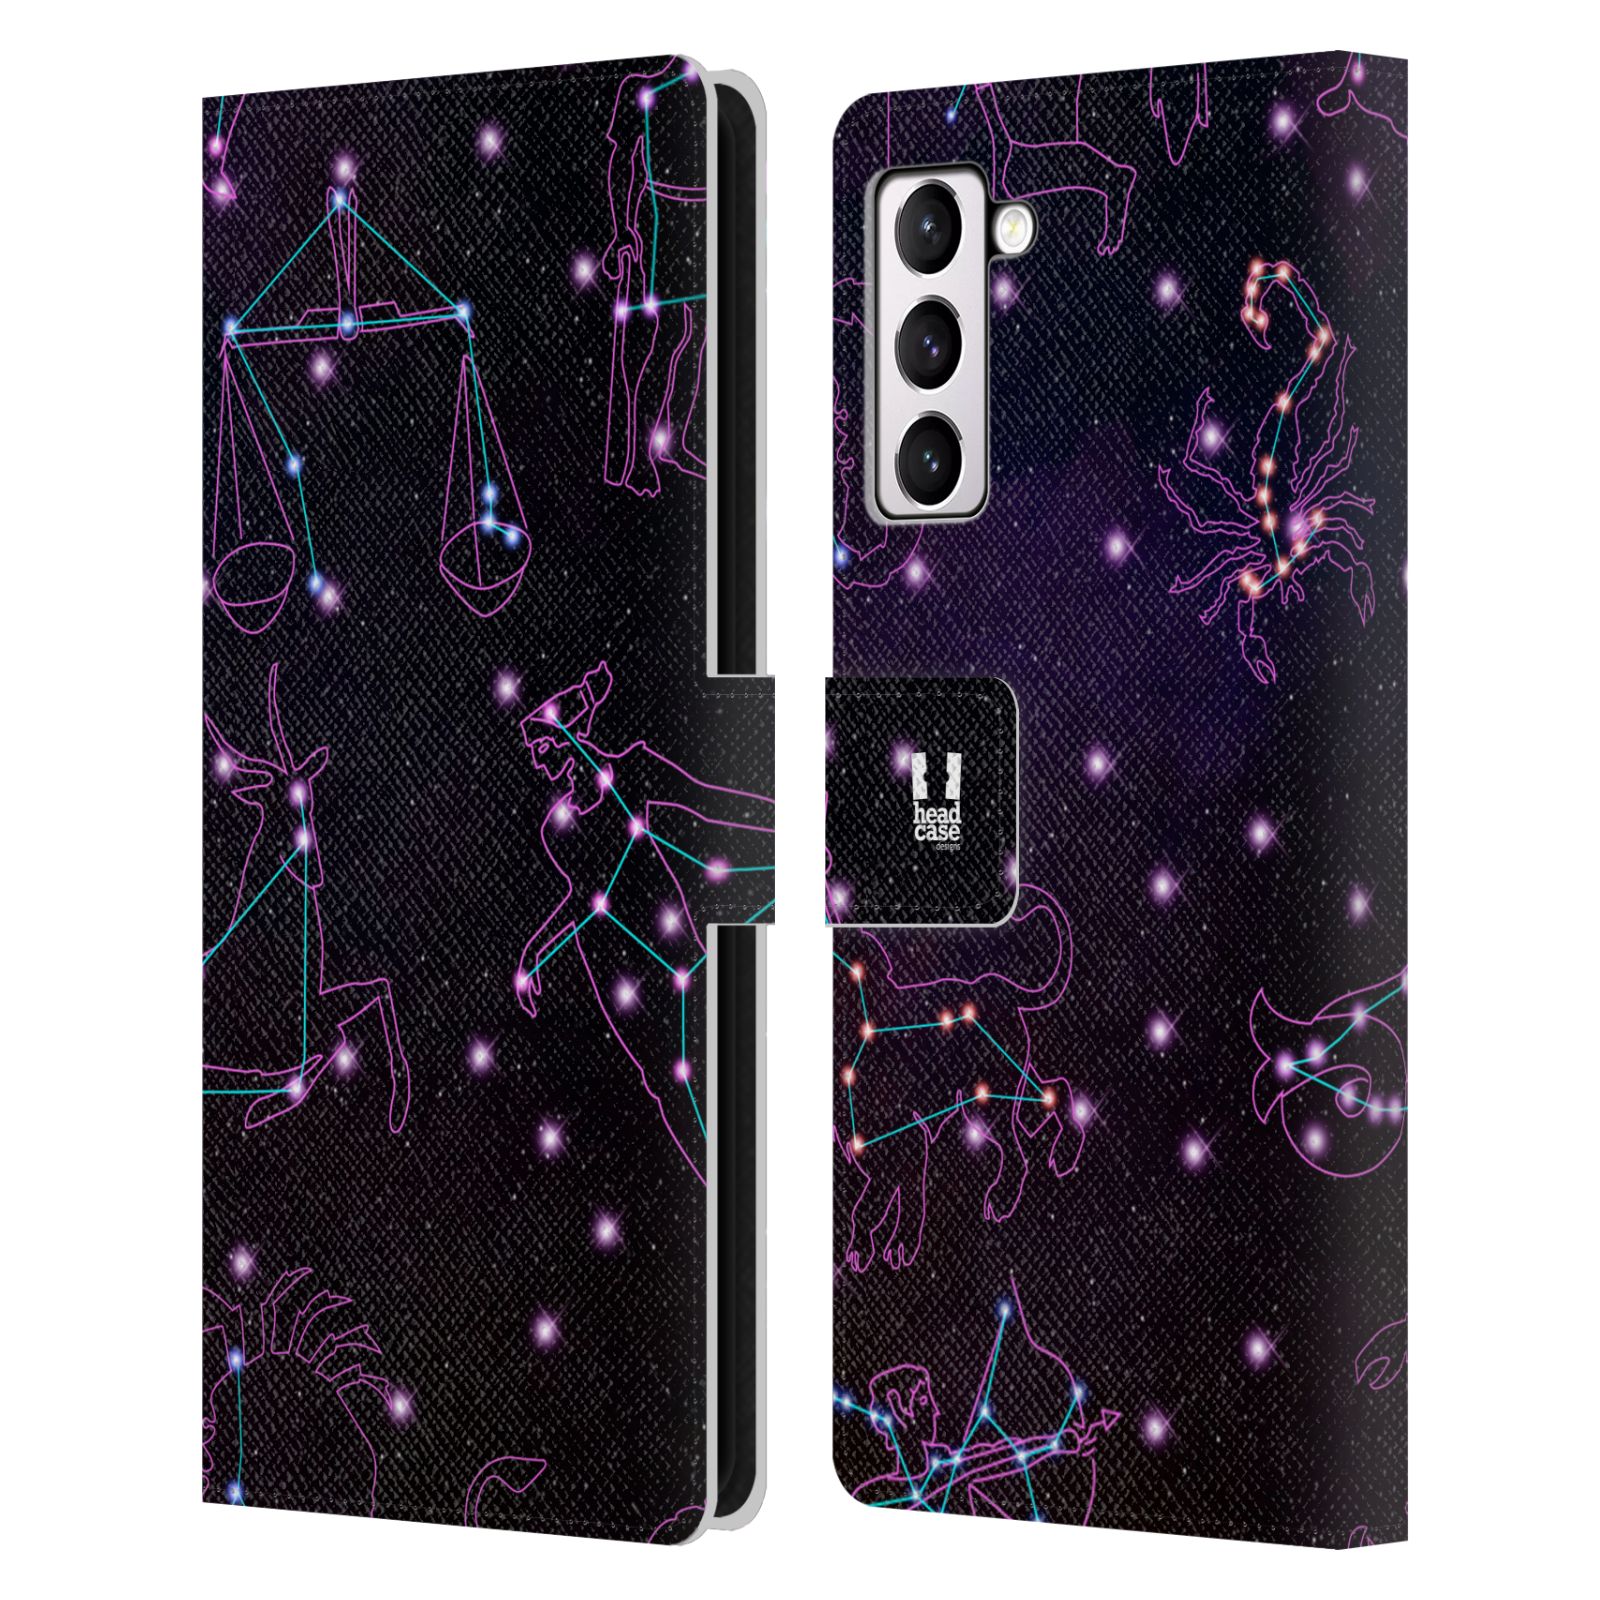 Pouzdro HEAD CASE na mobil Samsung Galaxy S21+ 5G / S21 PLUS 5G znamení zvěrokruhu fialová